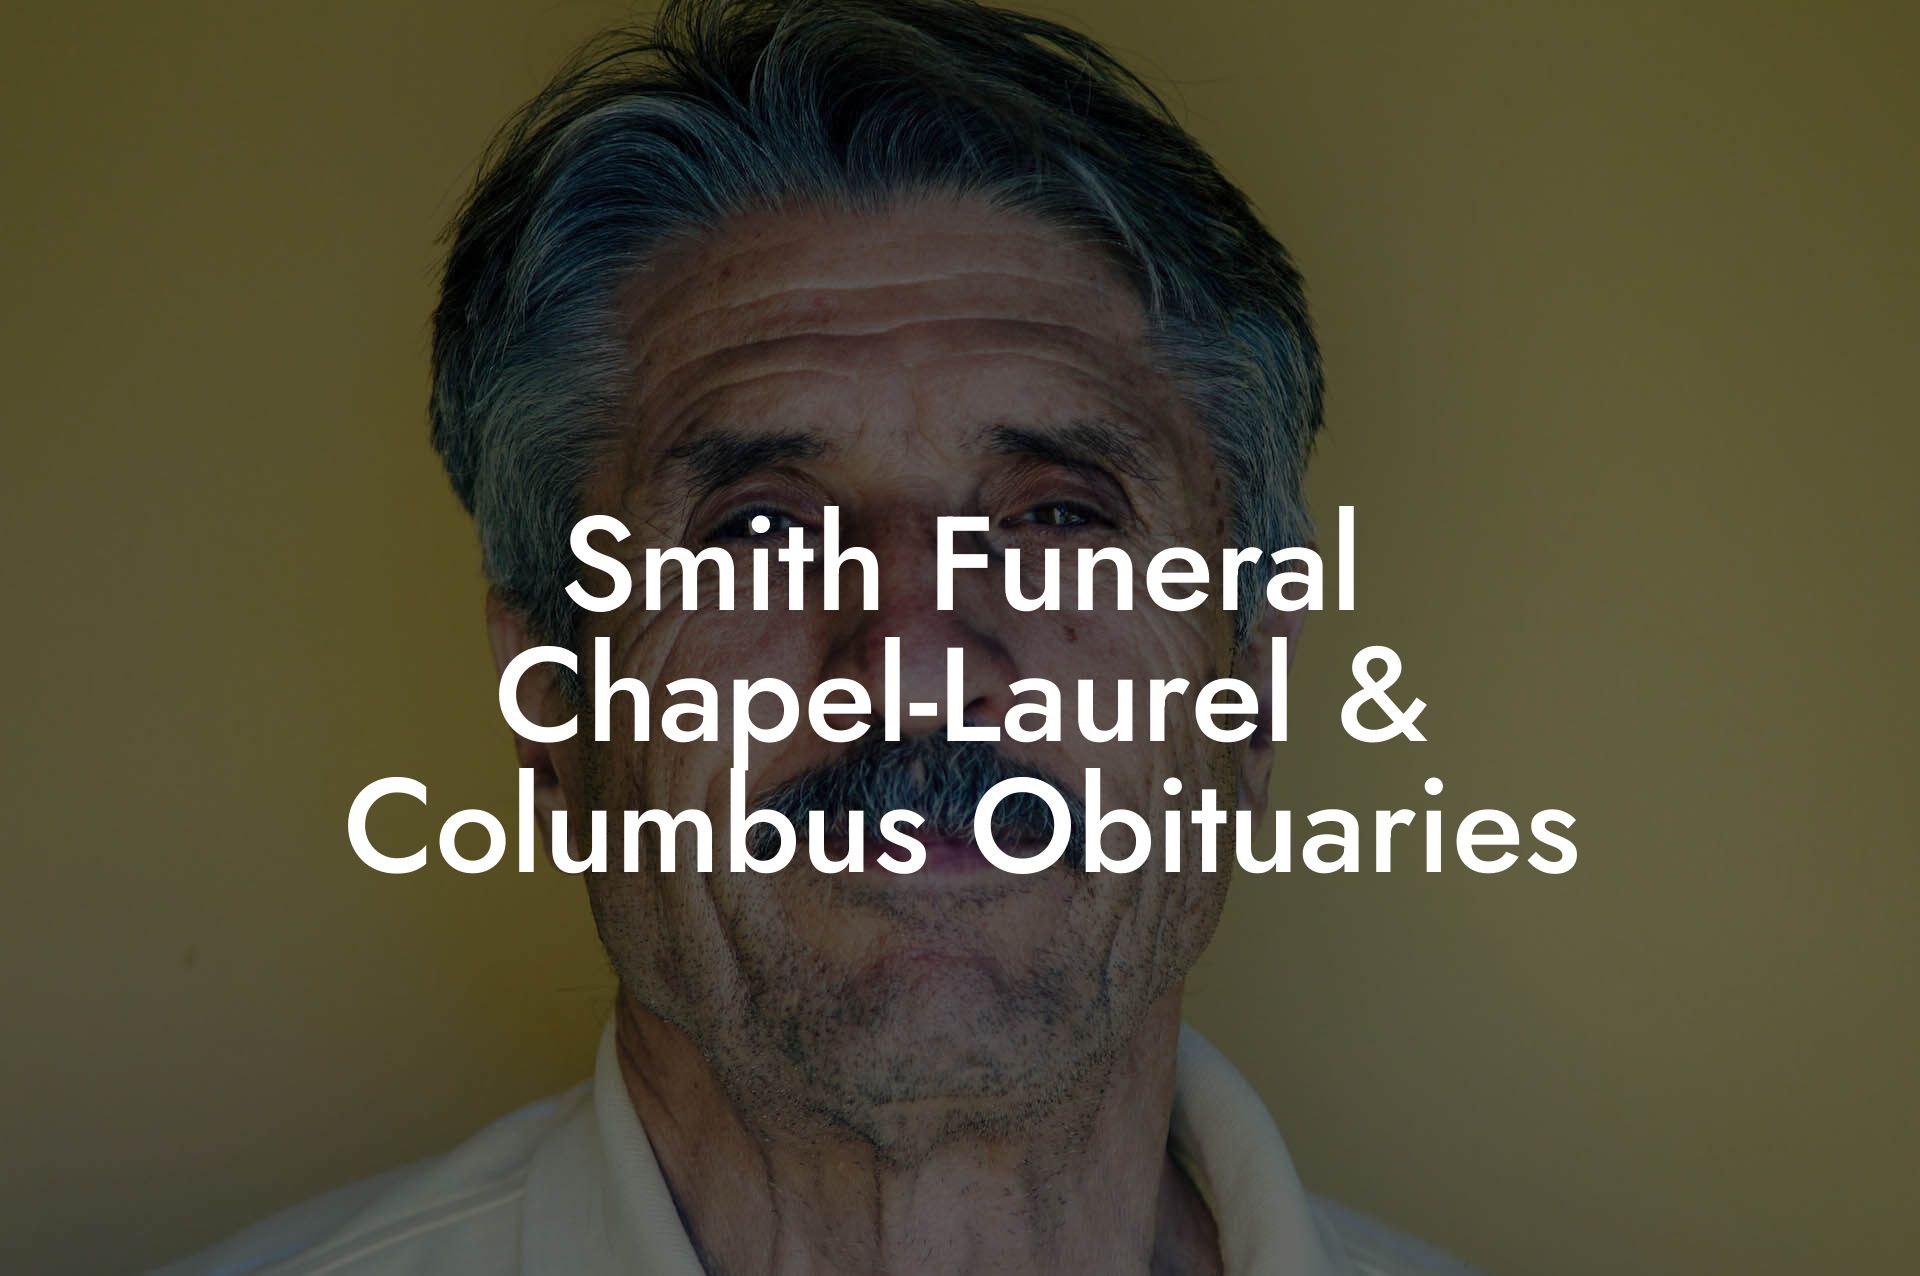 Smith Funeral Chapel-Laurel & Columbus Obituaries